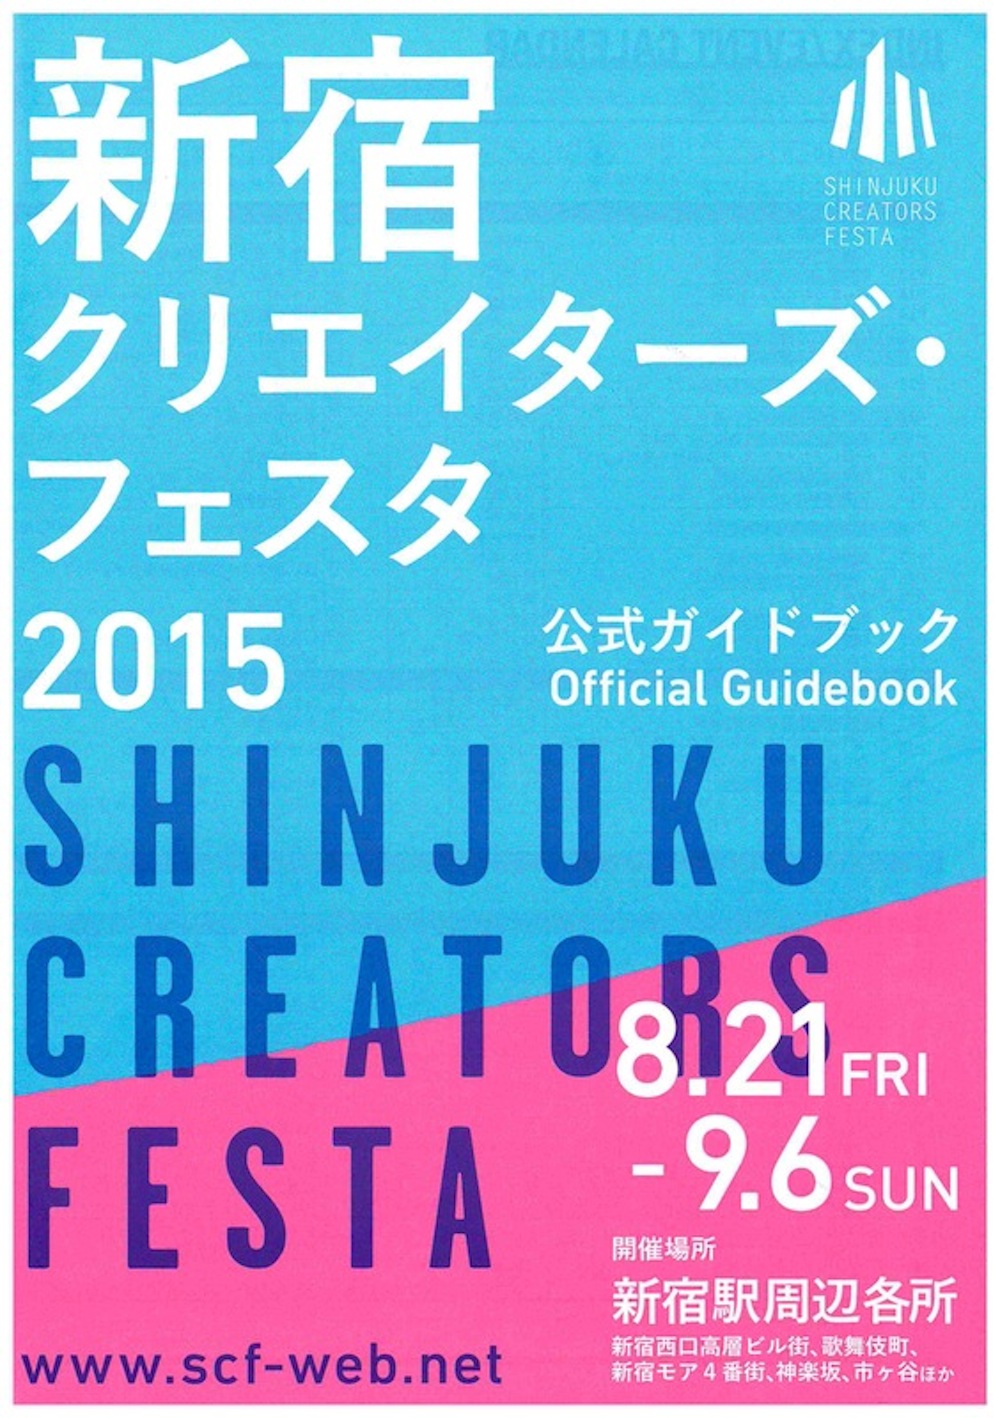 新宿クリエイターズ・フェスタ2015公式ガイドブック